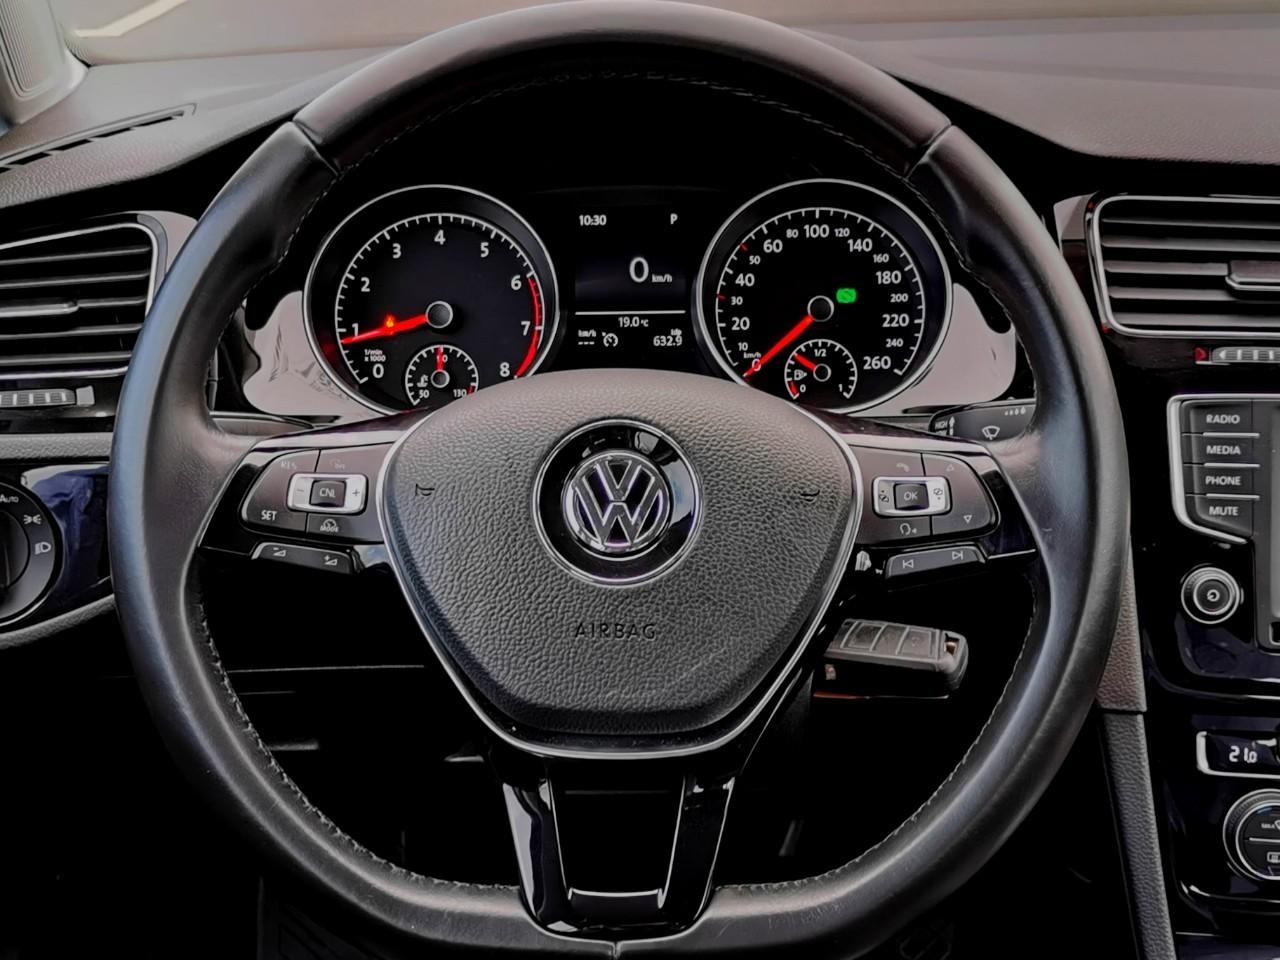 Volkswagen 二手車買賣專門店-2015-Golf